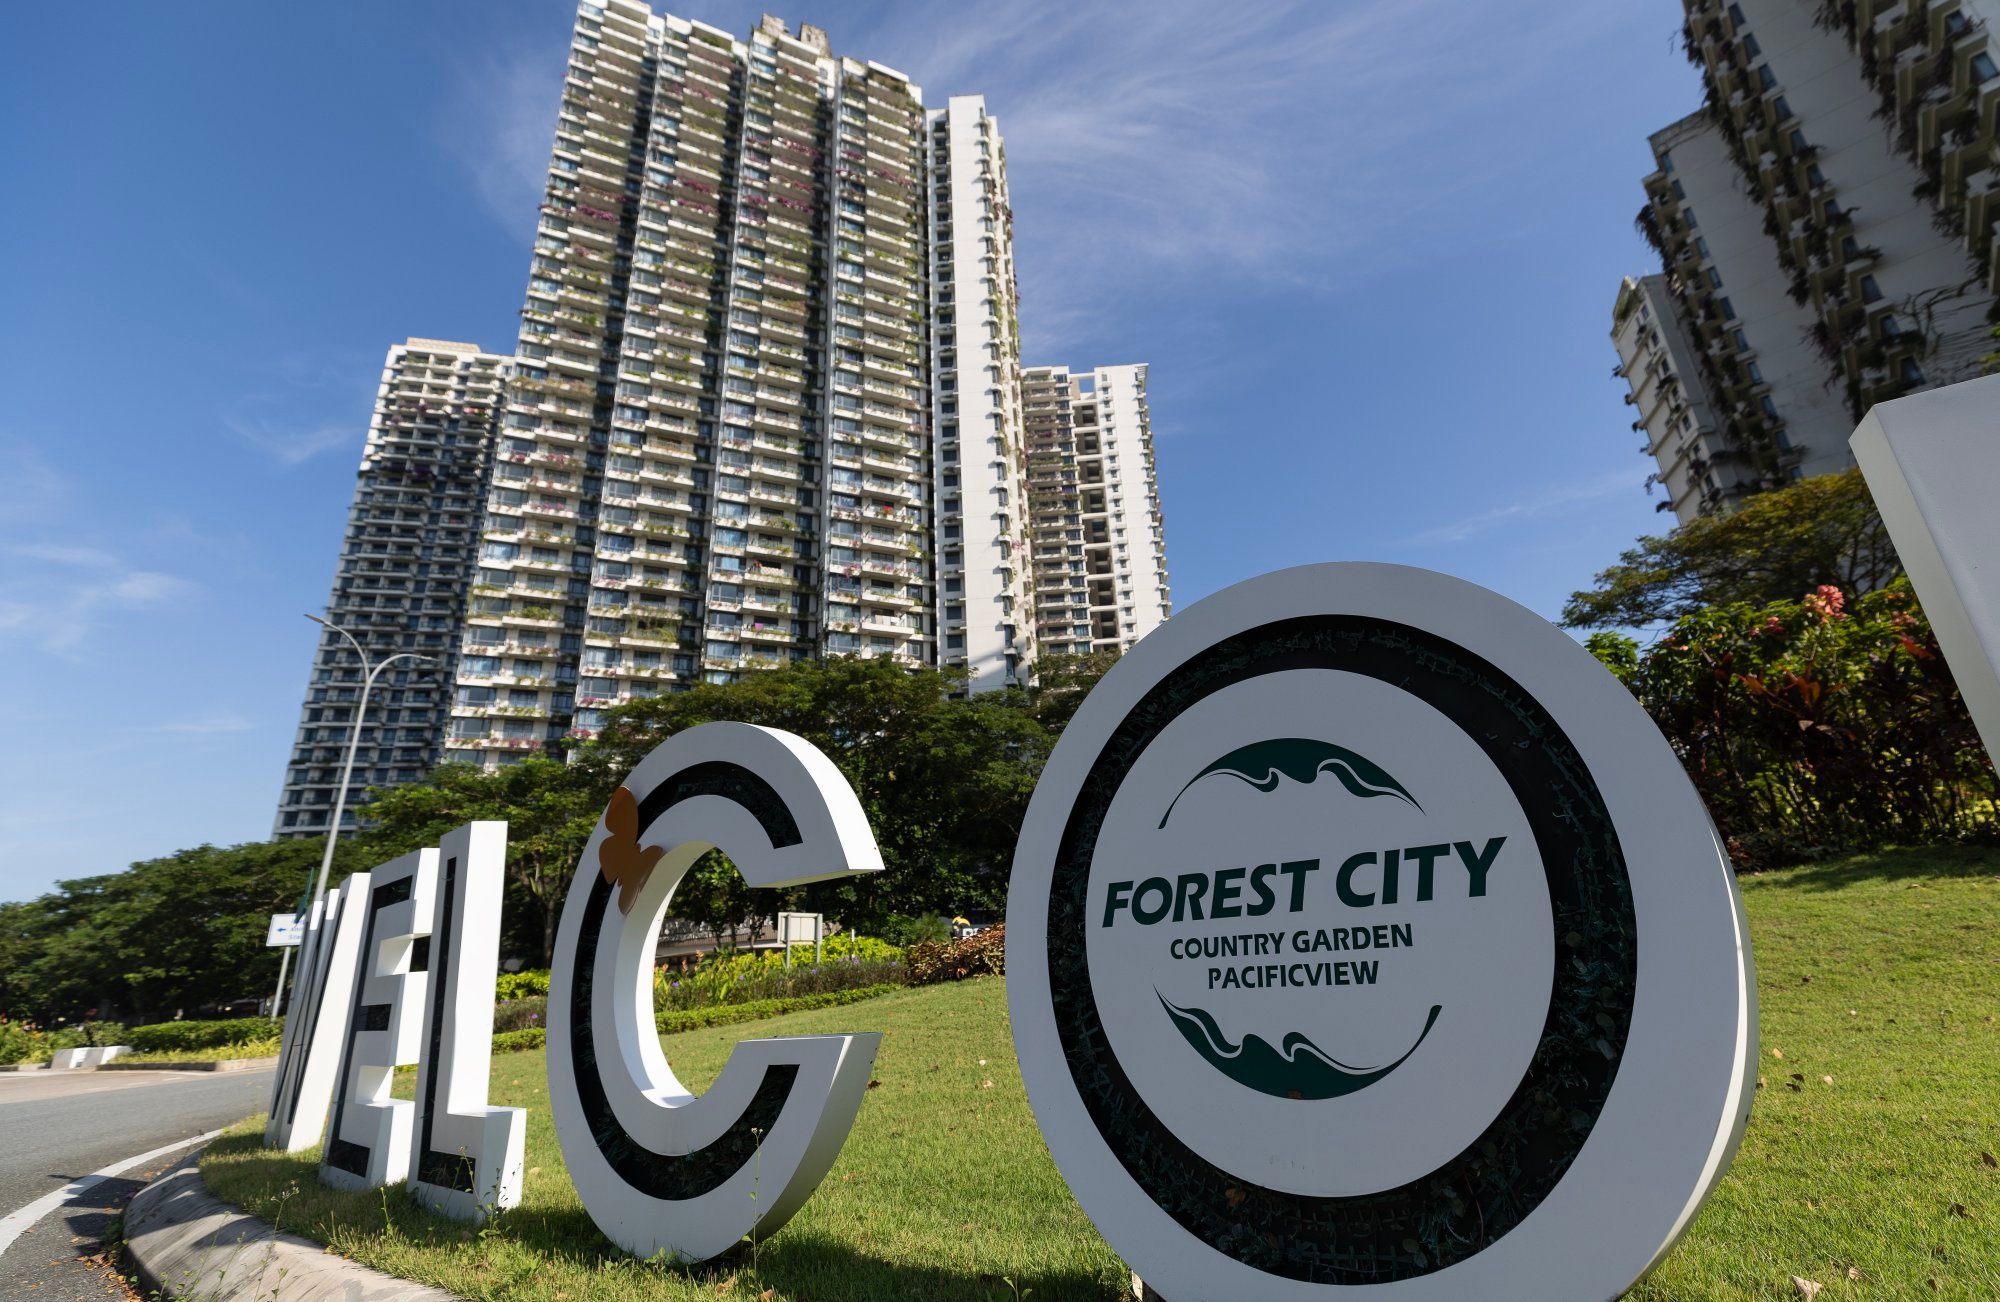 马来西亚由中国投资 1000 亿美元打造的鬼城森林城市将登陆 Netflix